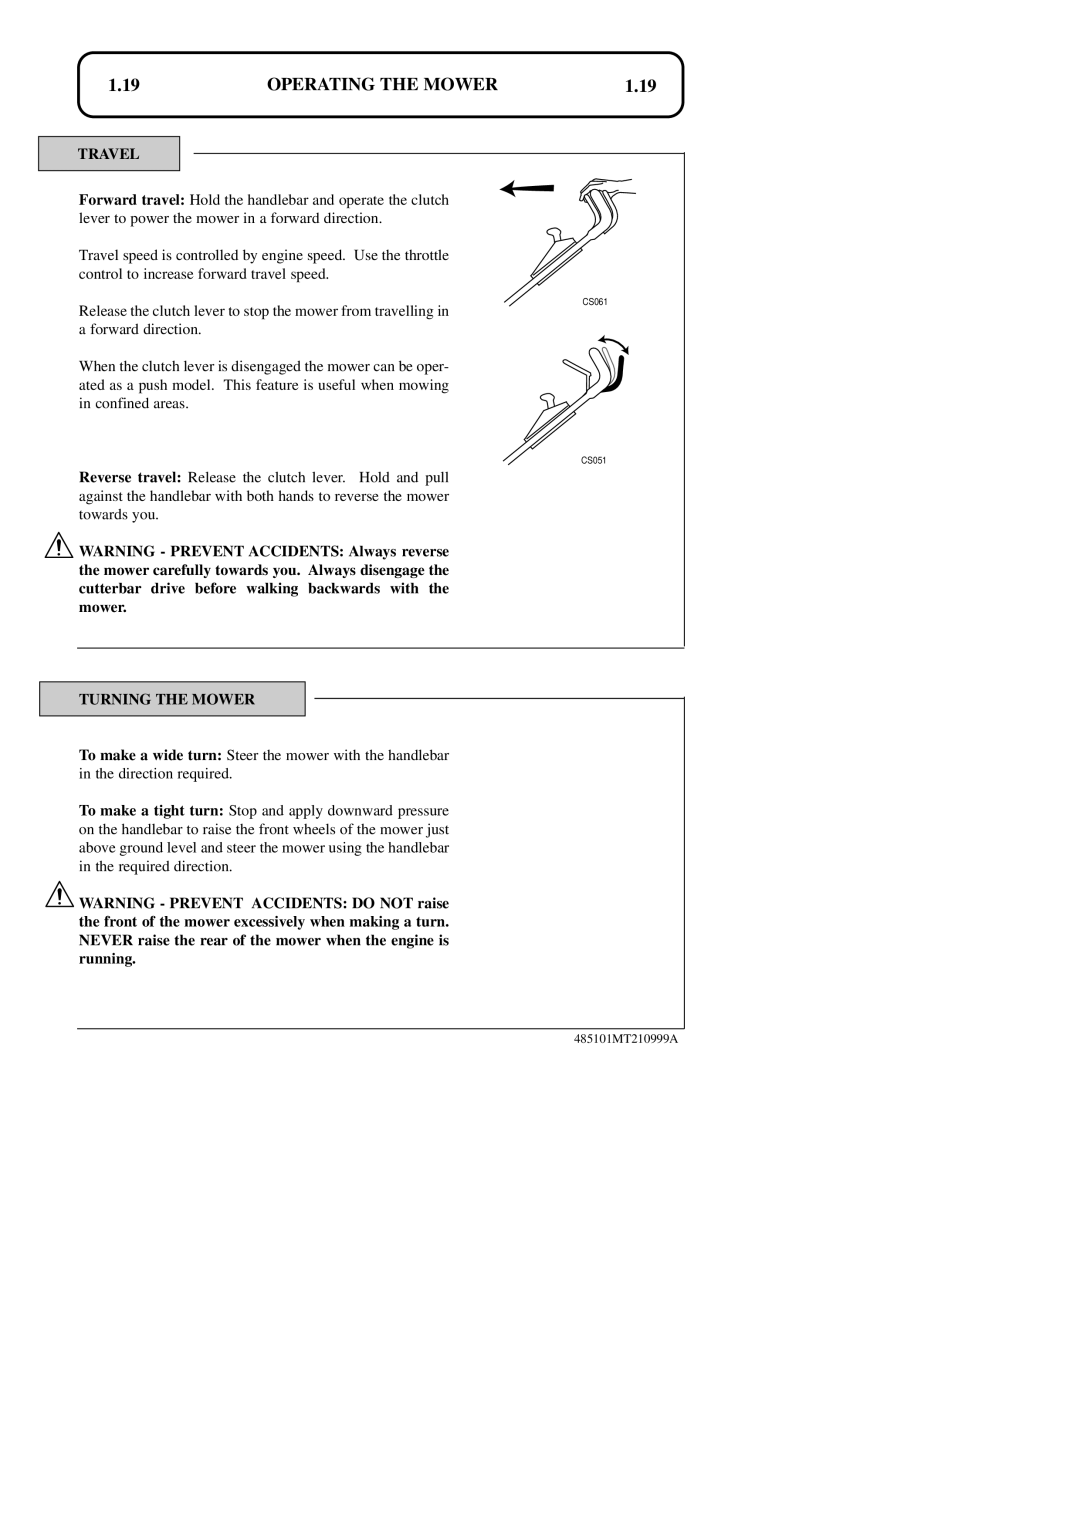 Hayter Mowers 48ST manual 1.19, Operating The Mower, Travel, Turning The Mower, CS061, CS051 